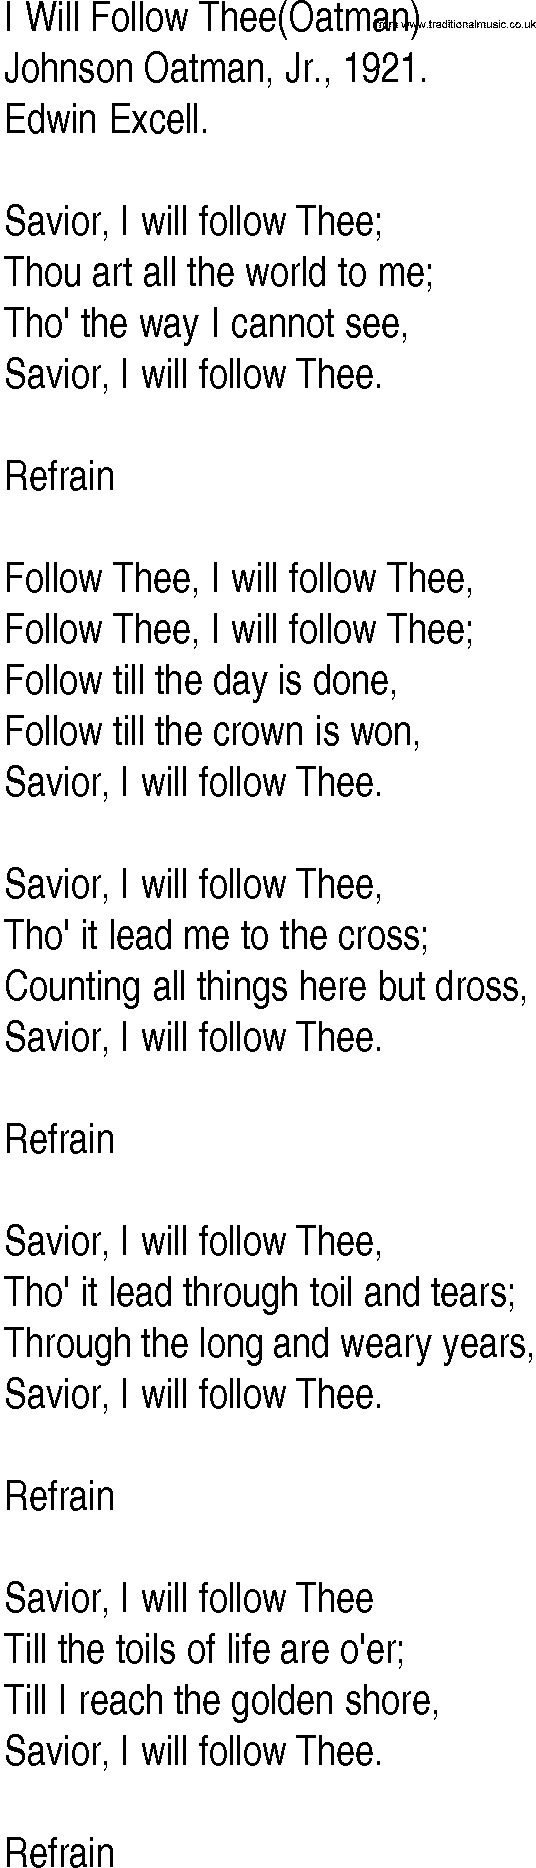 Hymn and Gospel Song: I Will Follow Thee(Oatman) by Johnson Oatman Jr lyrics